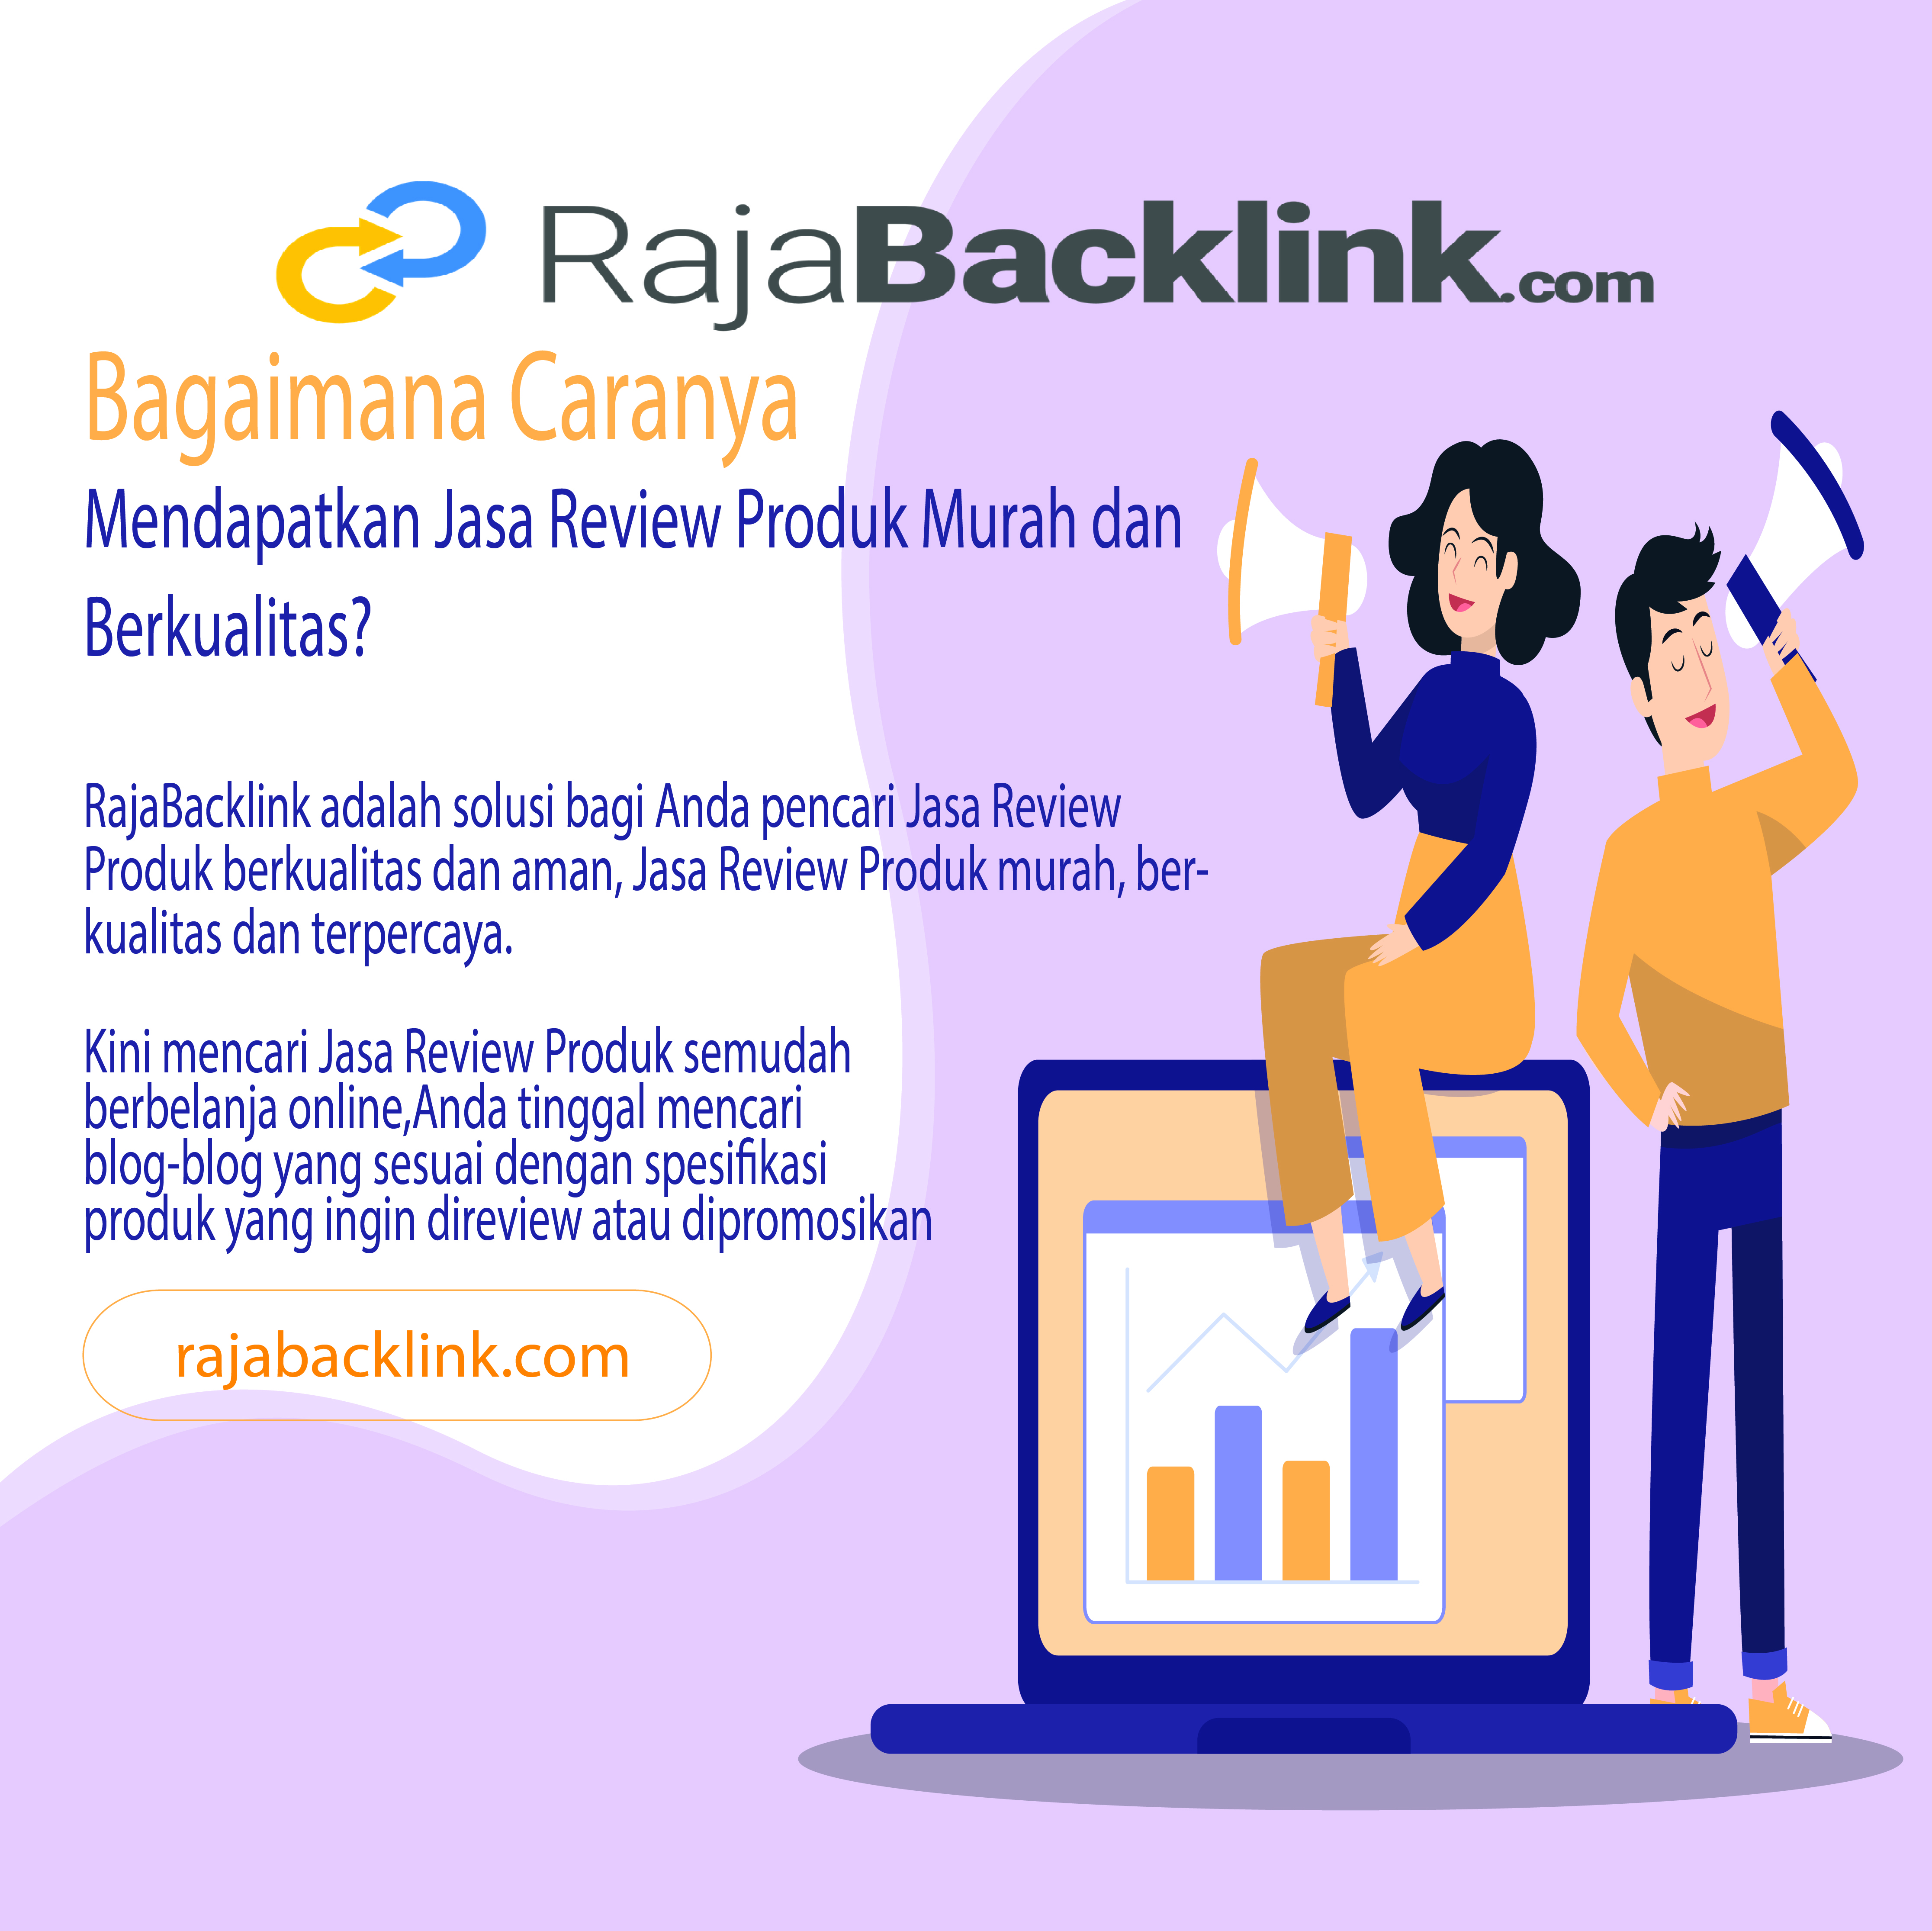 rajabacklink